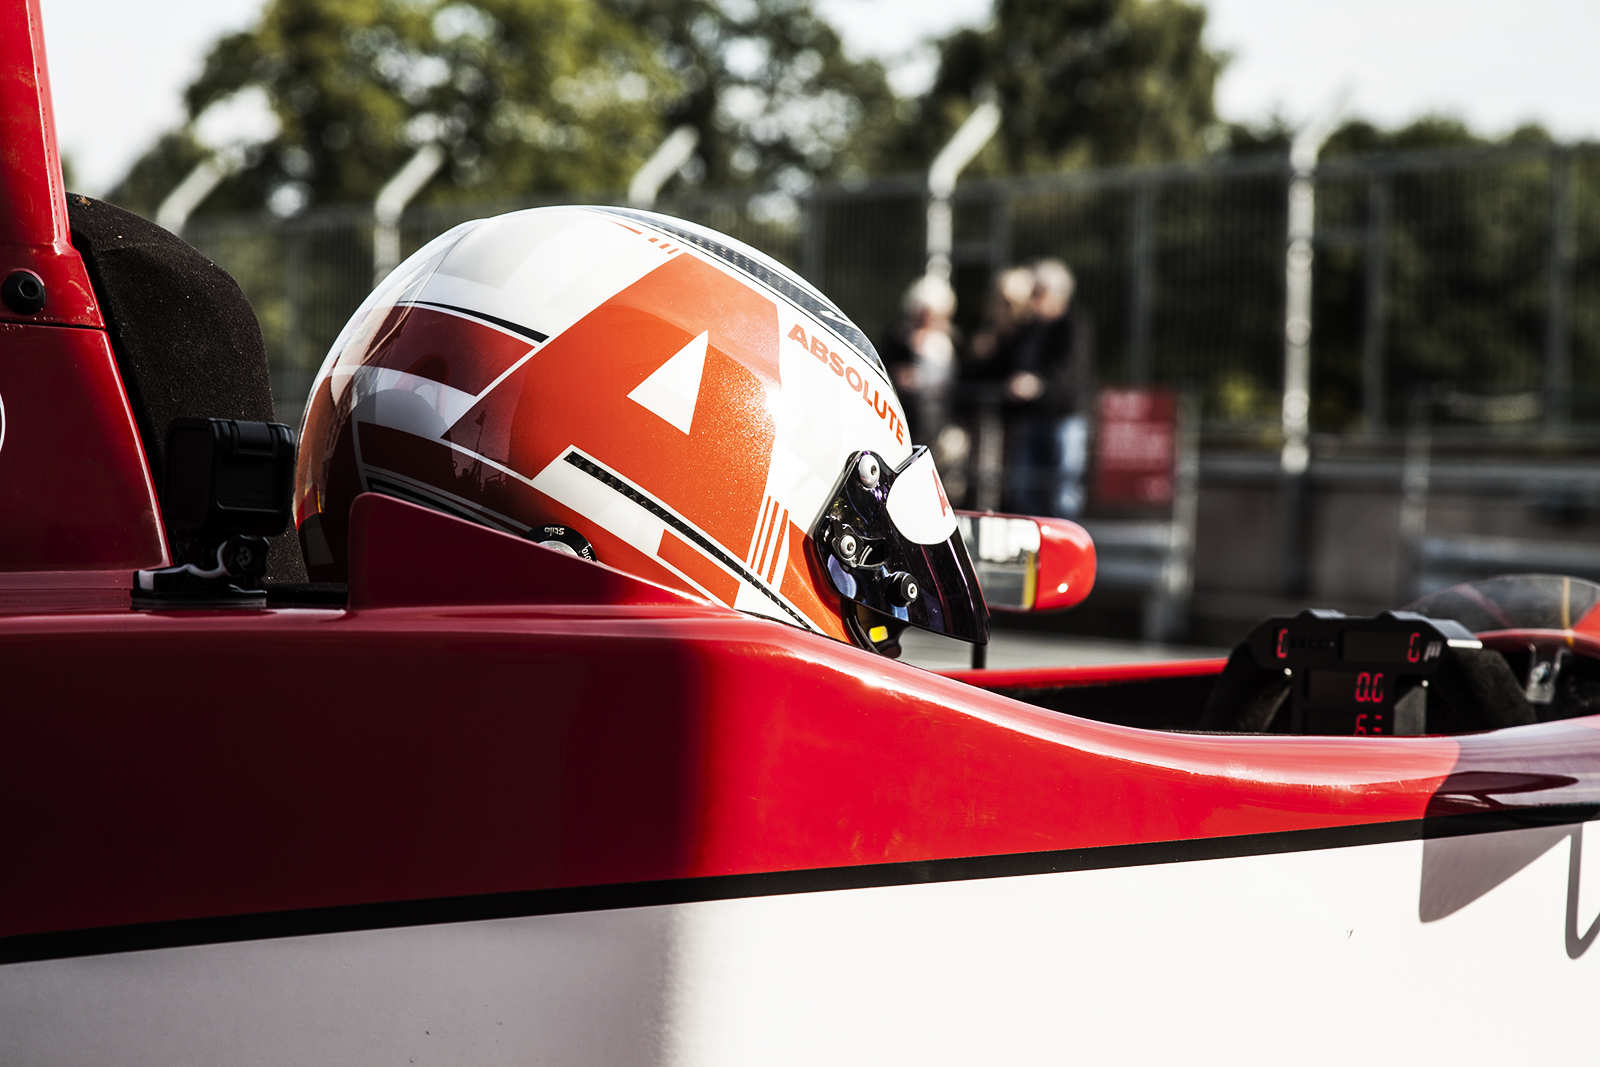 Chris Hodgen races his formula 3 car at Oulton Park with Absolute Helmet